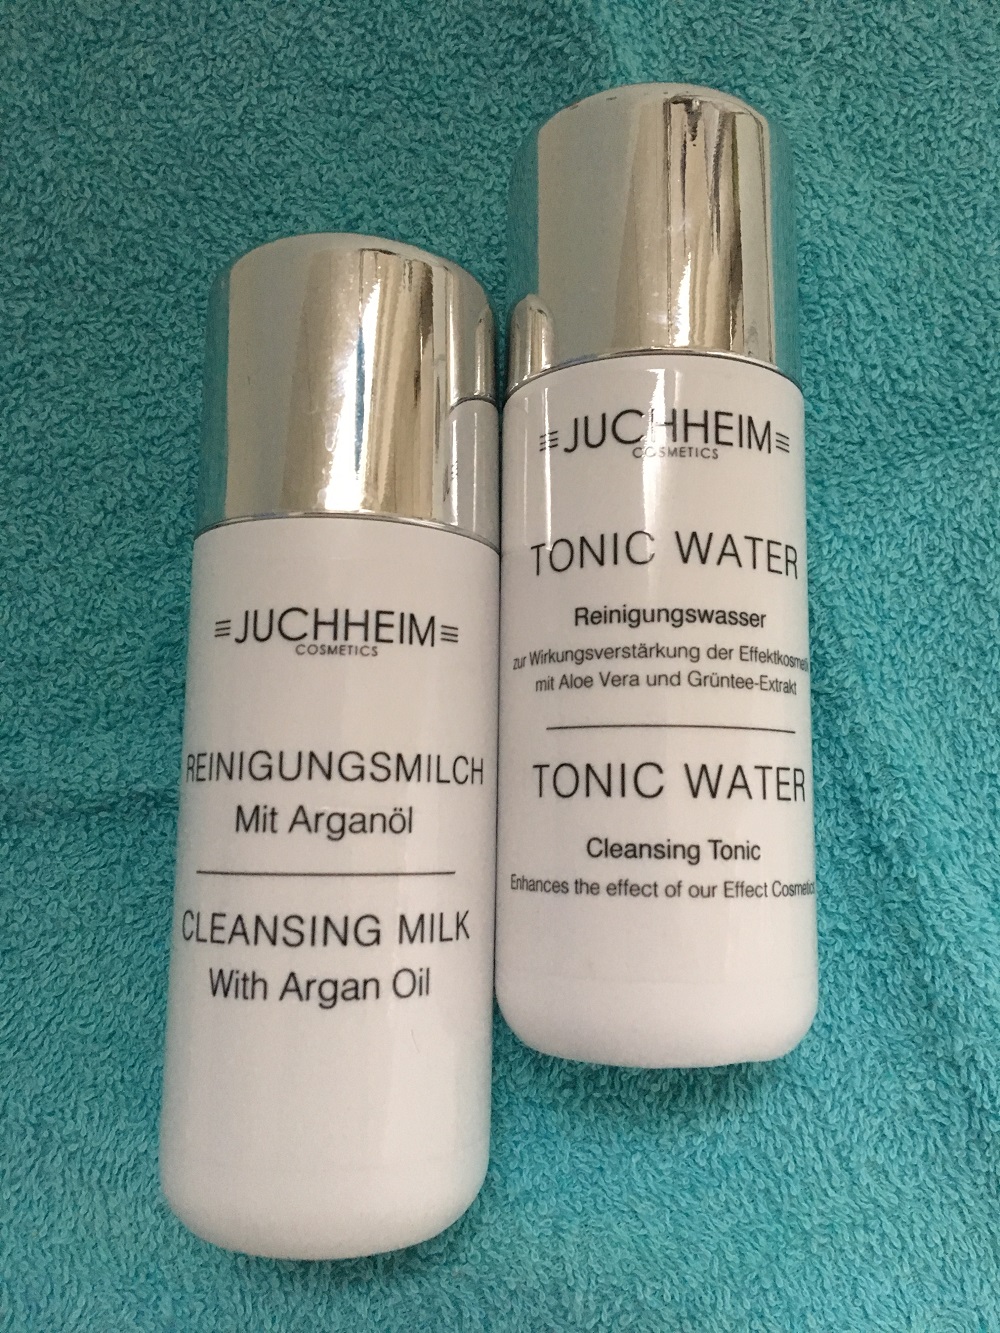 milde Gesichtsreinigung mit Juchheim Cosmetics Reinigunsmilch und Gesichtswasser